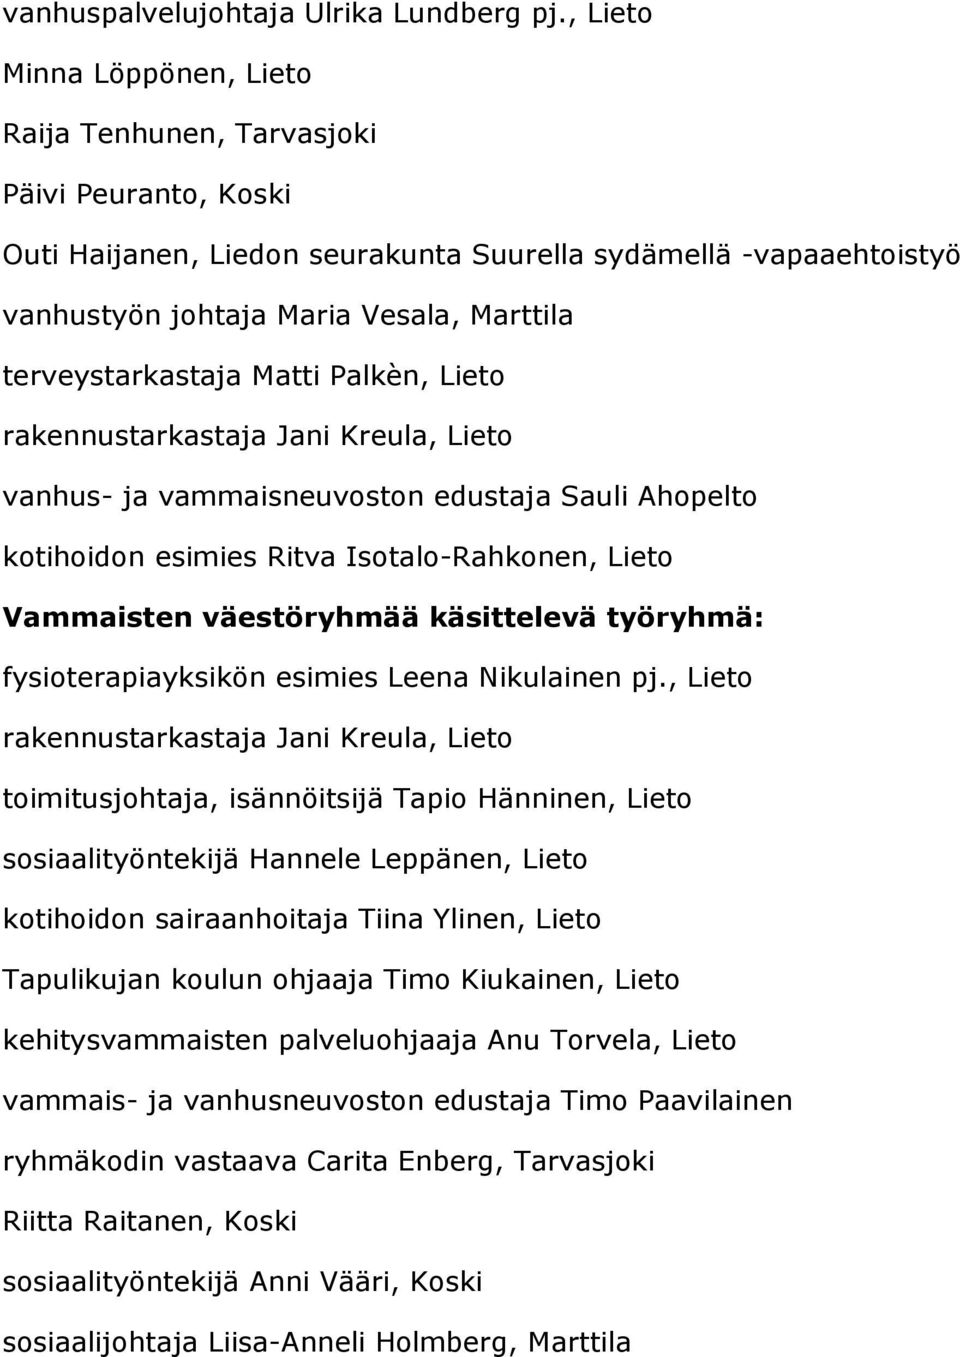 Matti Palkèn, rakennustarkastaja Jani Kreula, vanhus- ja vammaisneuvoston edustaja Sauli Ahopelto kotihoidon esimies Ritva Isotalo-Rahkonen, Vammaisten väestöryhmää käsittelevä työryhmä: